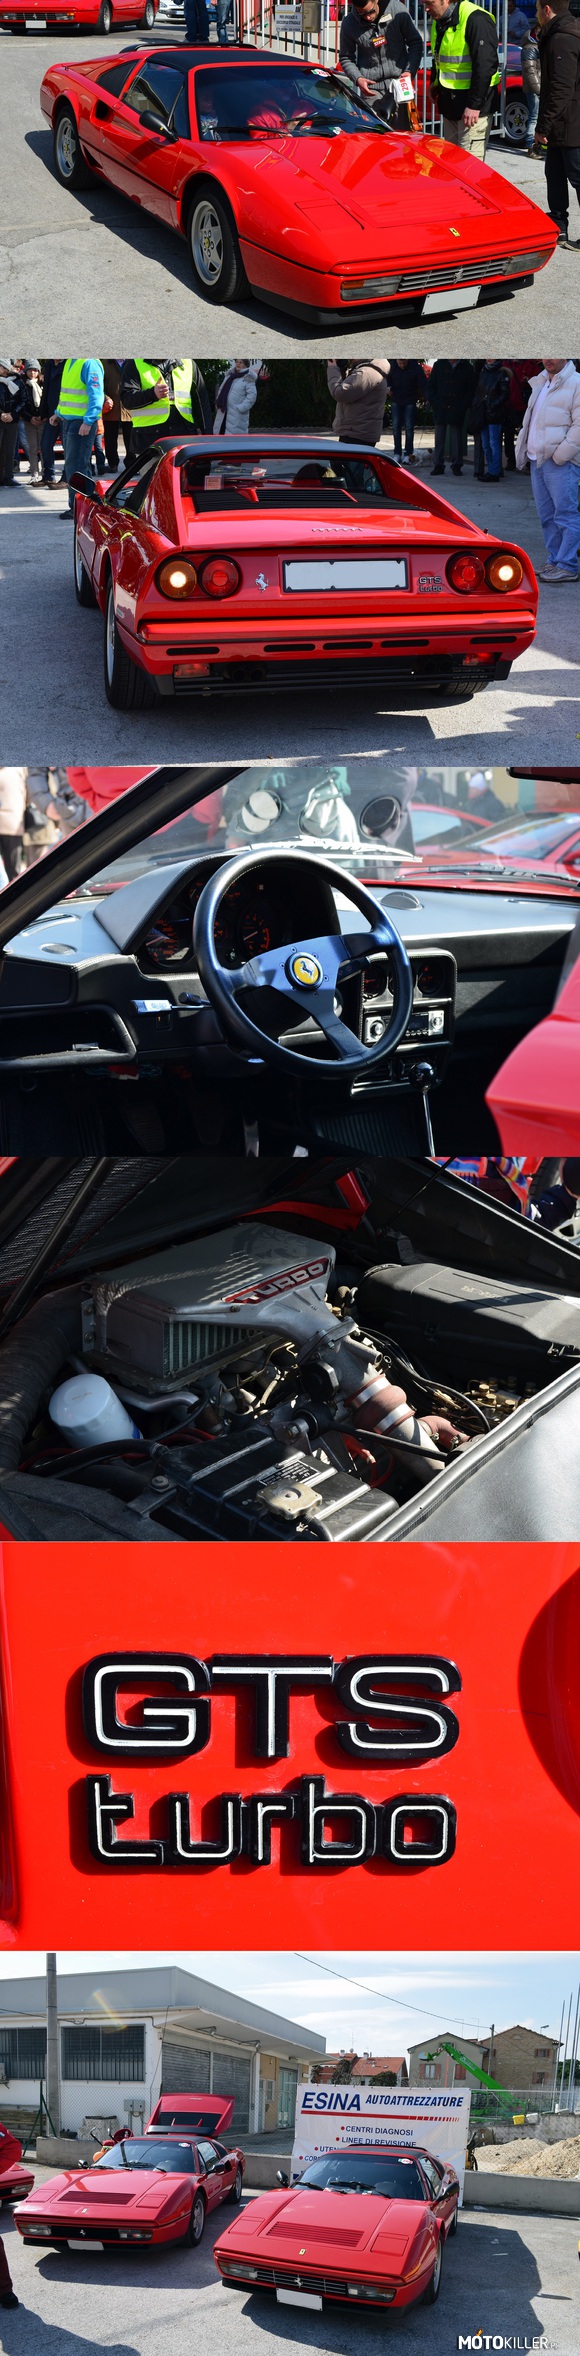 Ferrari – 328 GTS turbo 